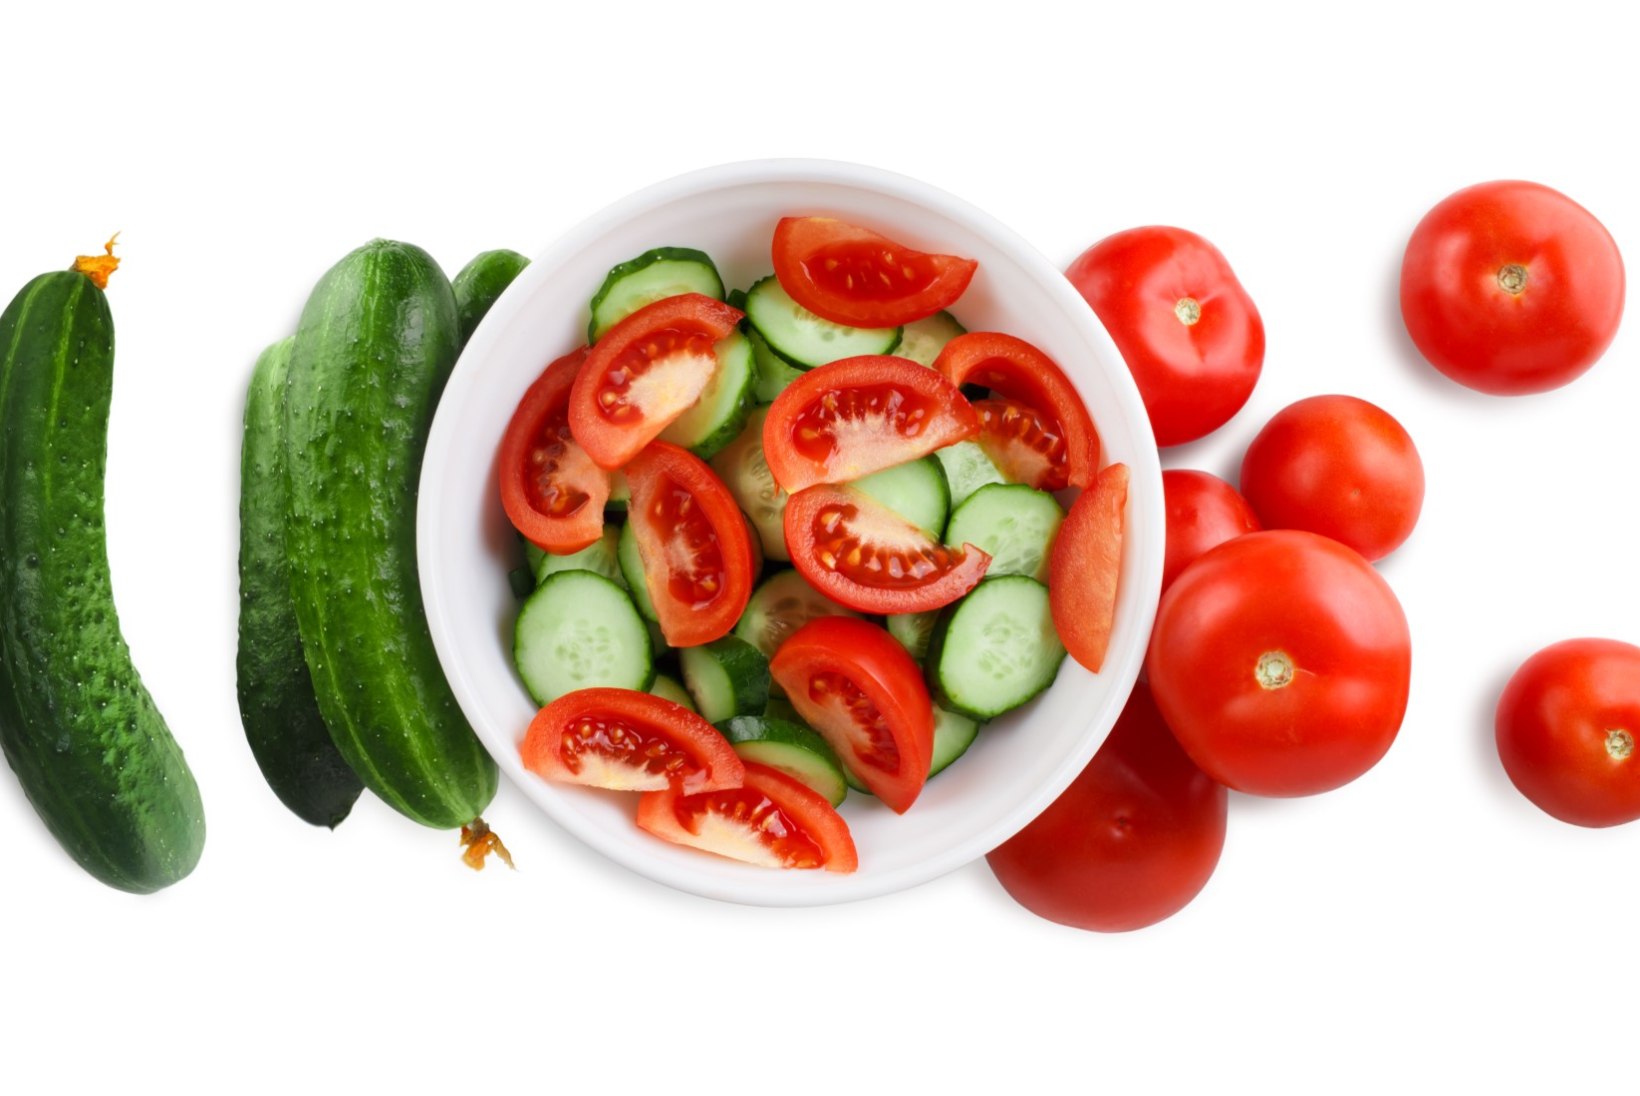 Kui hoolid oma tervisest, ära pane tomatit ja kurki ühte salatisse